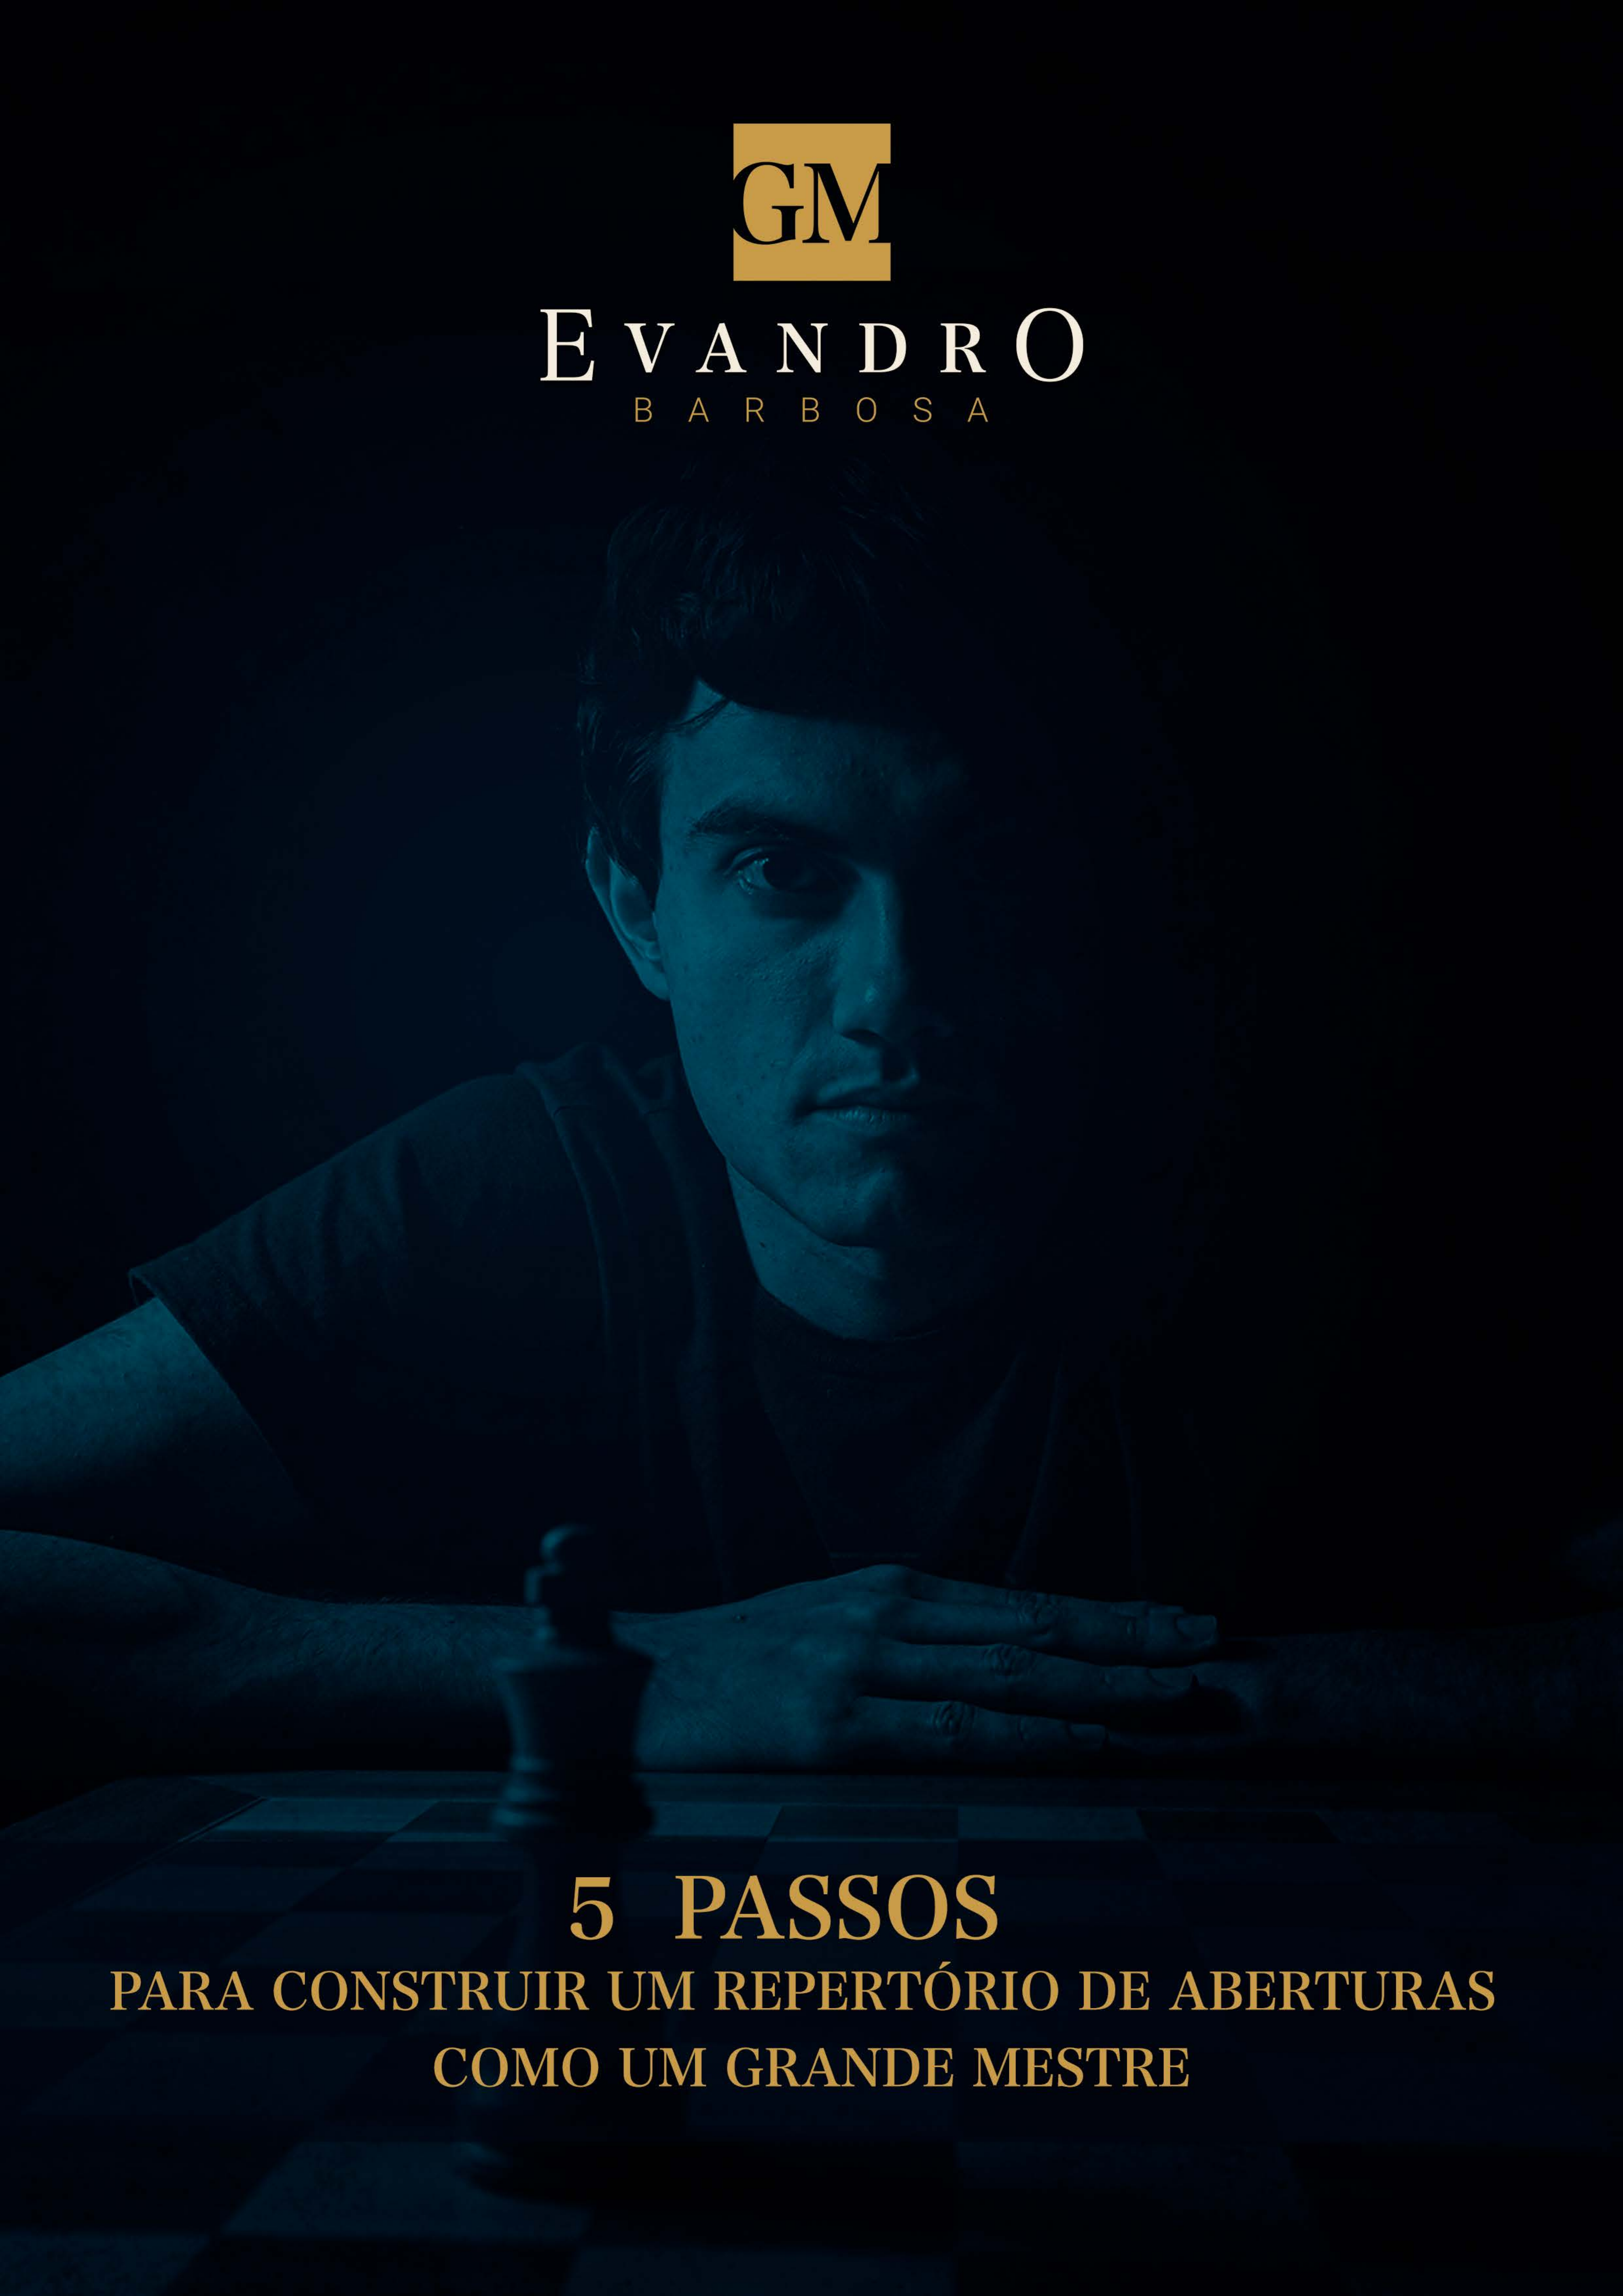 Xadrez Bem Brasileiro - ⚠️ Edição #018 - DEZ/2021 - GM Evandro Barbosa!! ⚠️  Com muito orgulho apresentamos aos nossos leitores o destaque da capa da  nova edição da Revista Xadrez Bem